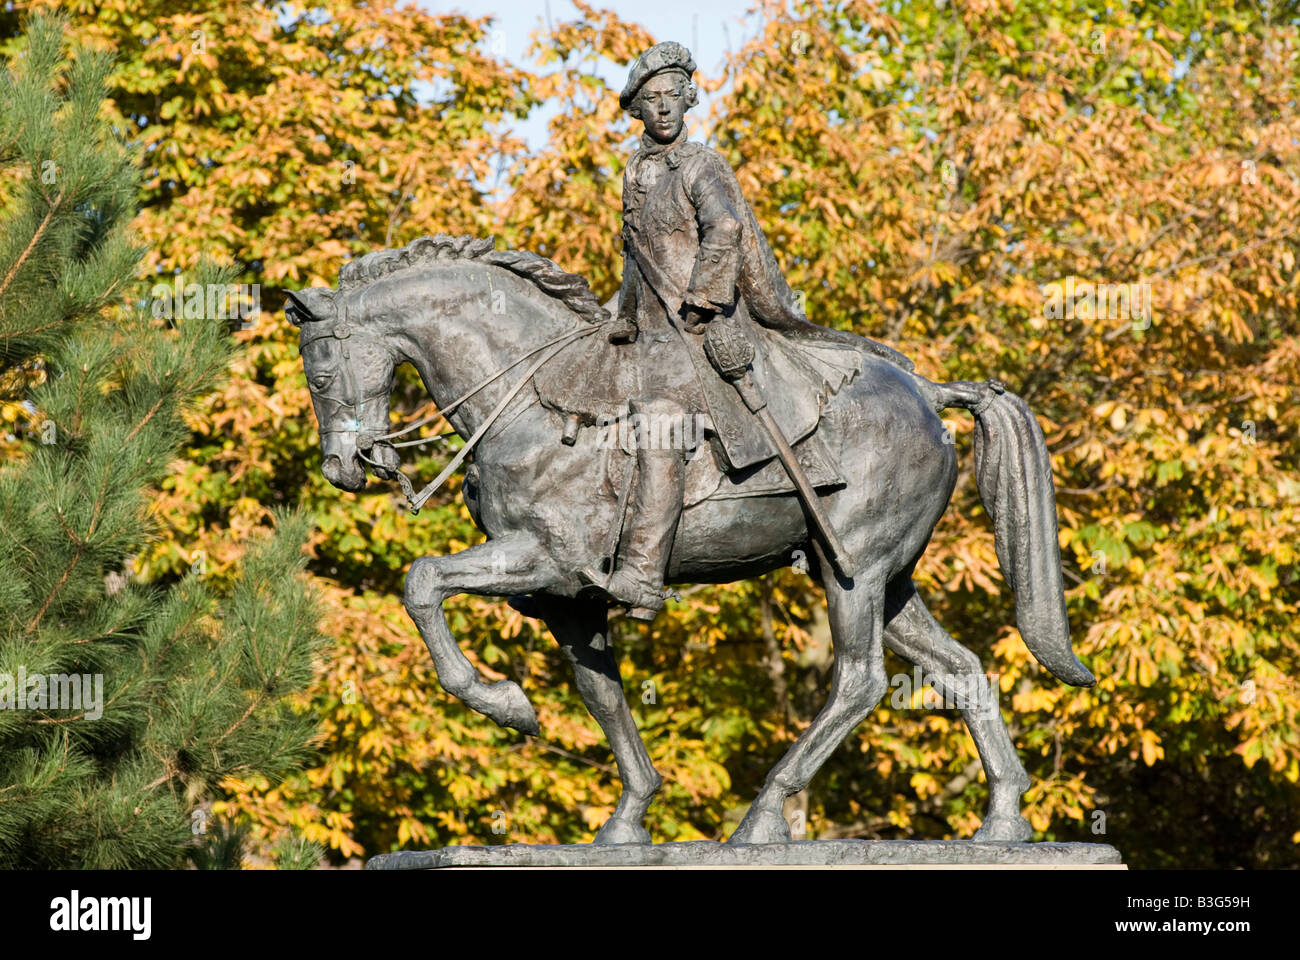 Bronzestatue von "Bonnie Prince Charlie" Derby "Great Britain" Stockfoto